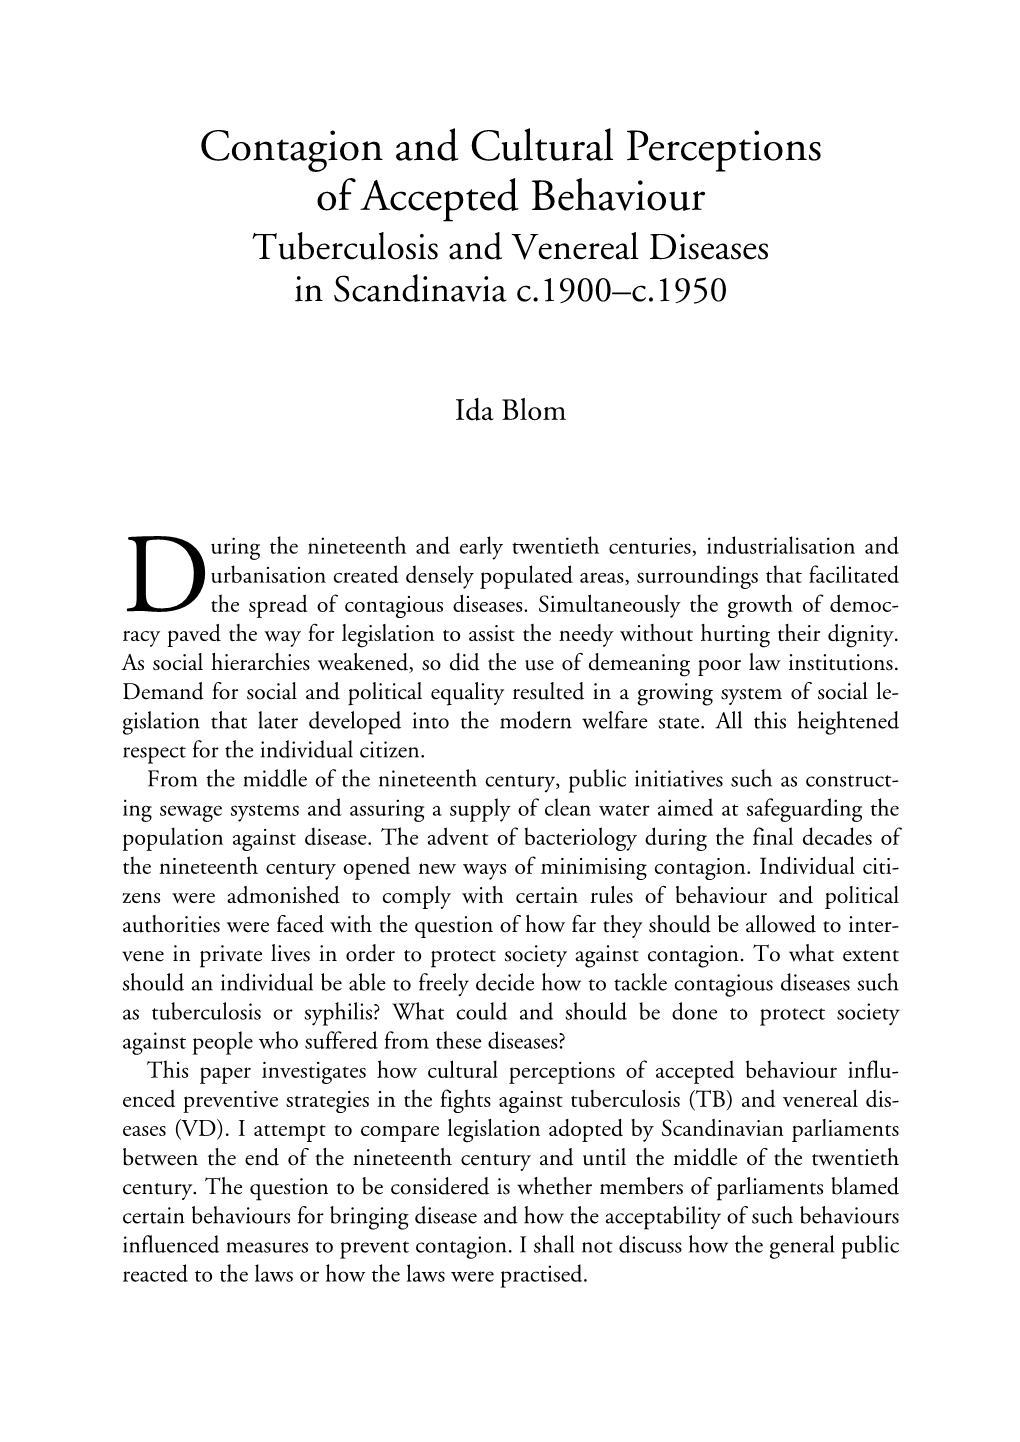 Tuberculosis and Venereal Diseases in Scandinavia C.1900–C.1950